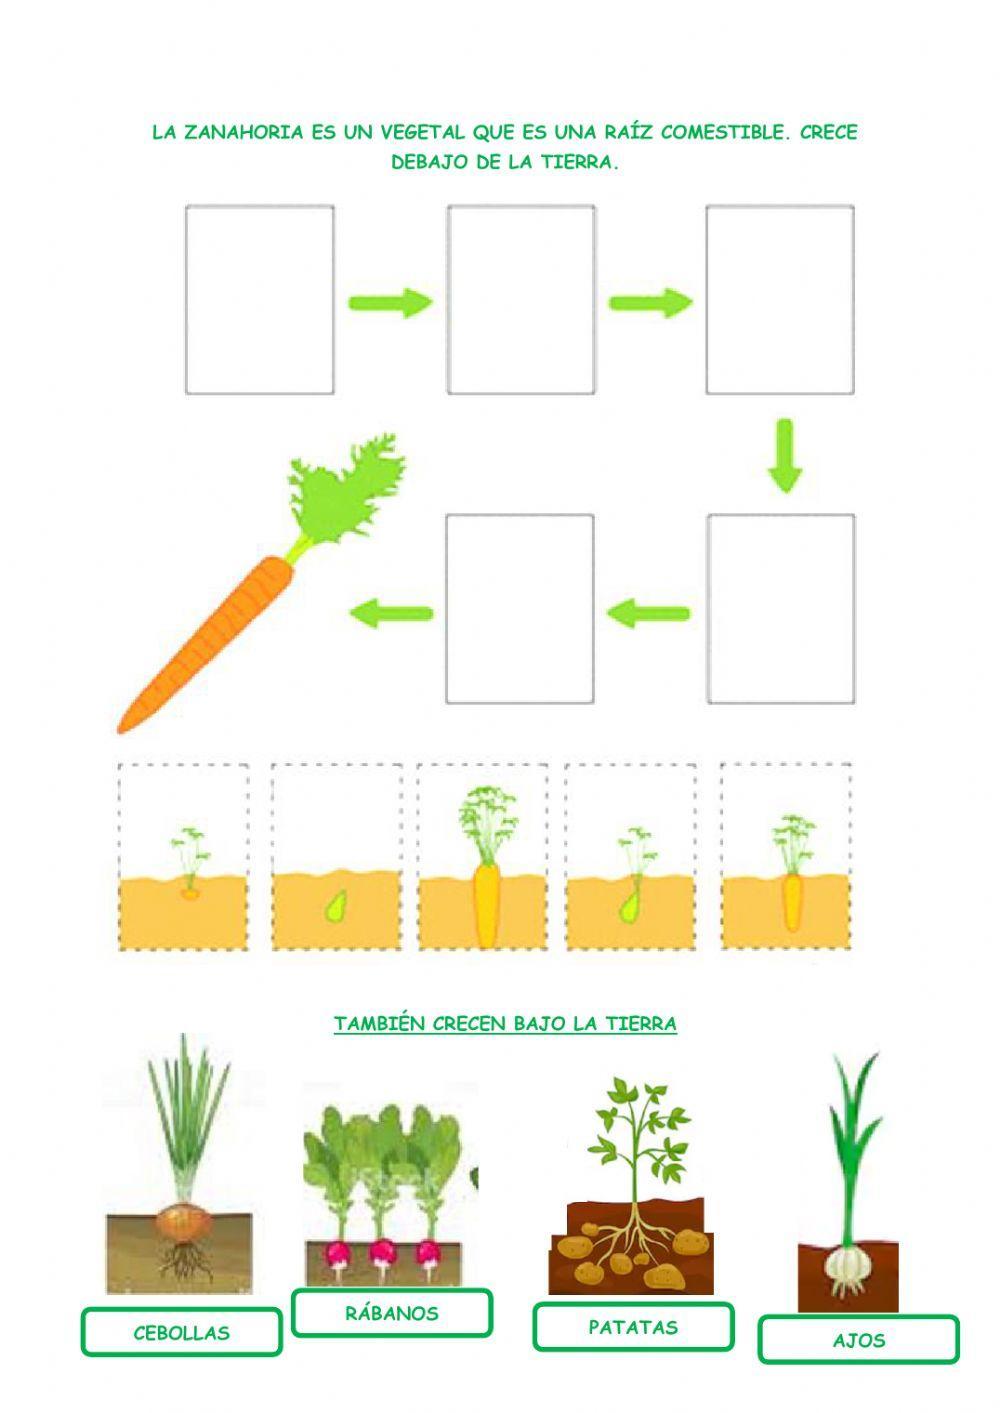 Las plantas. verduras y hortalizas